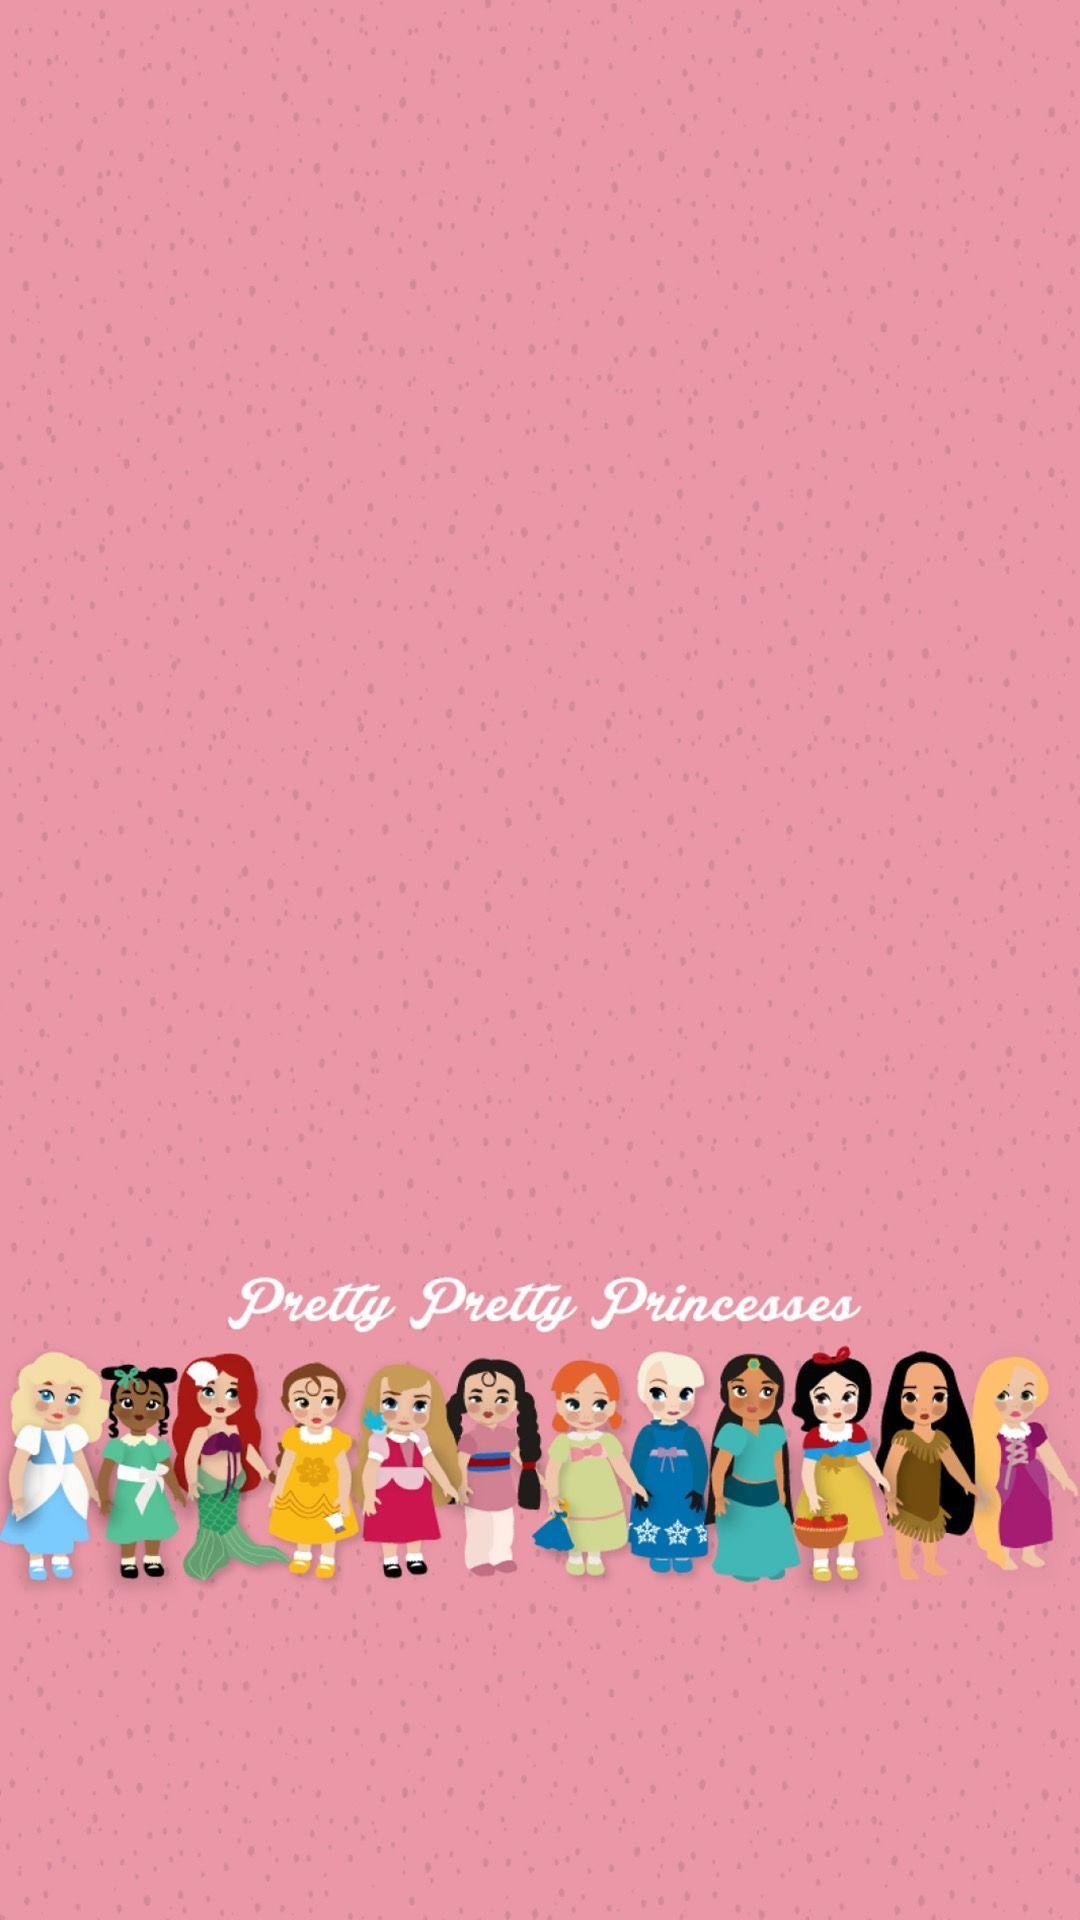 Cute Disney Princess iPhone Wallpaper Free Cute Disney